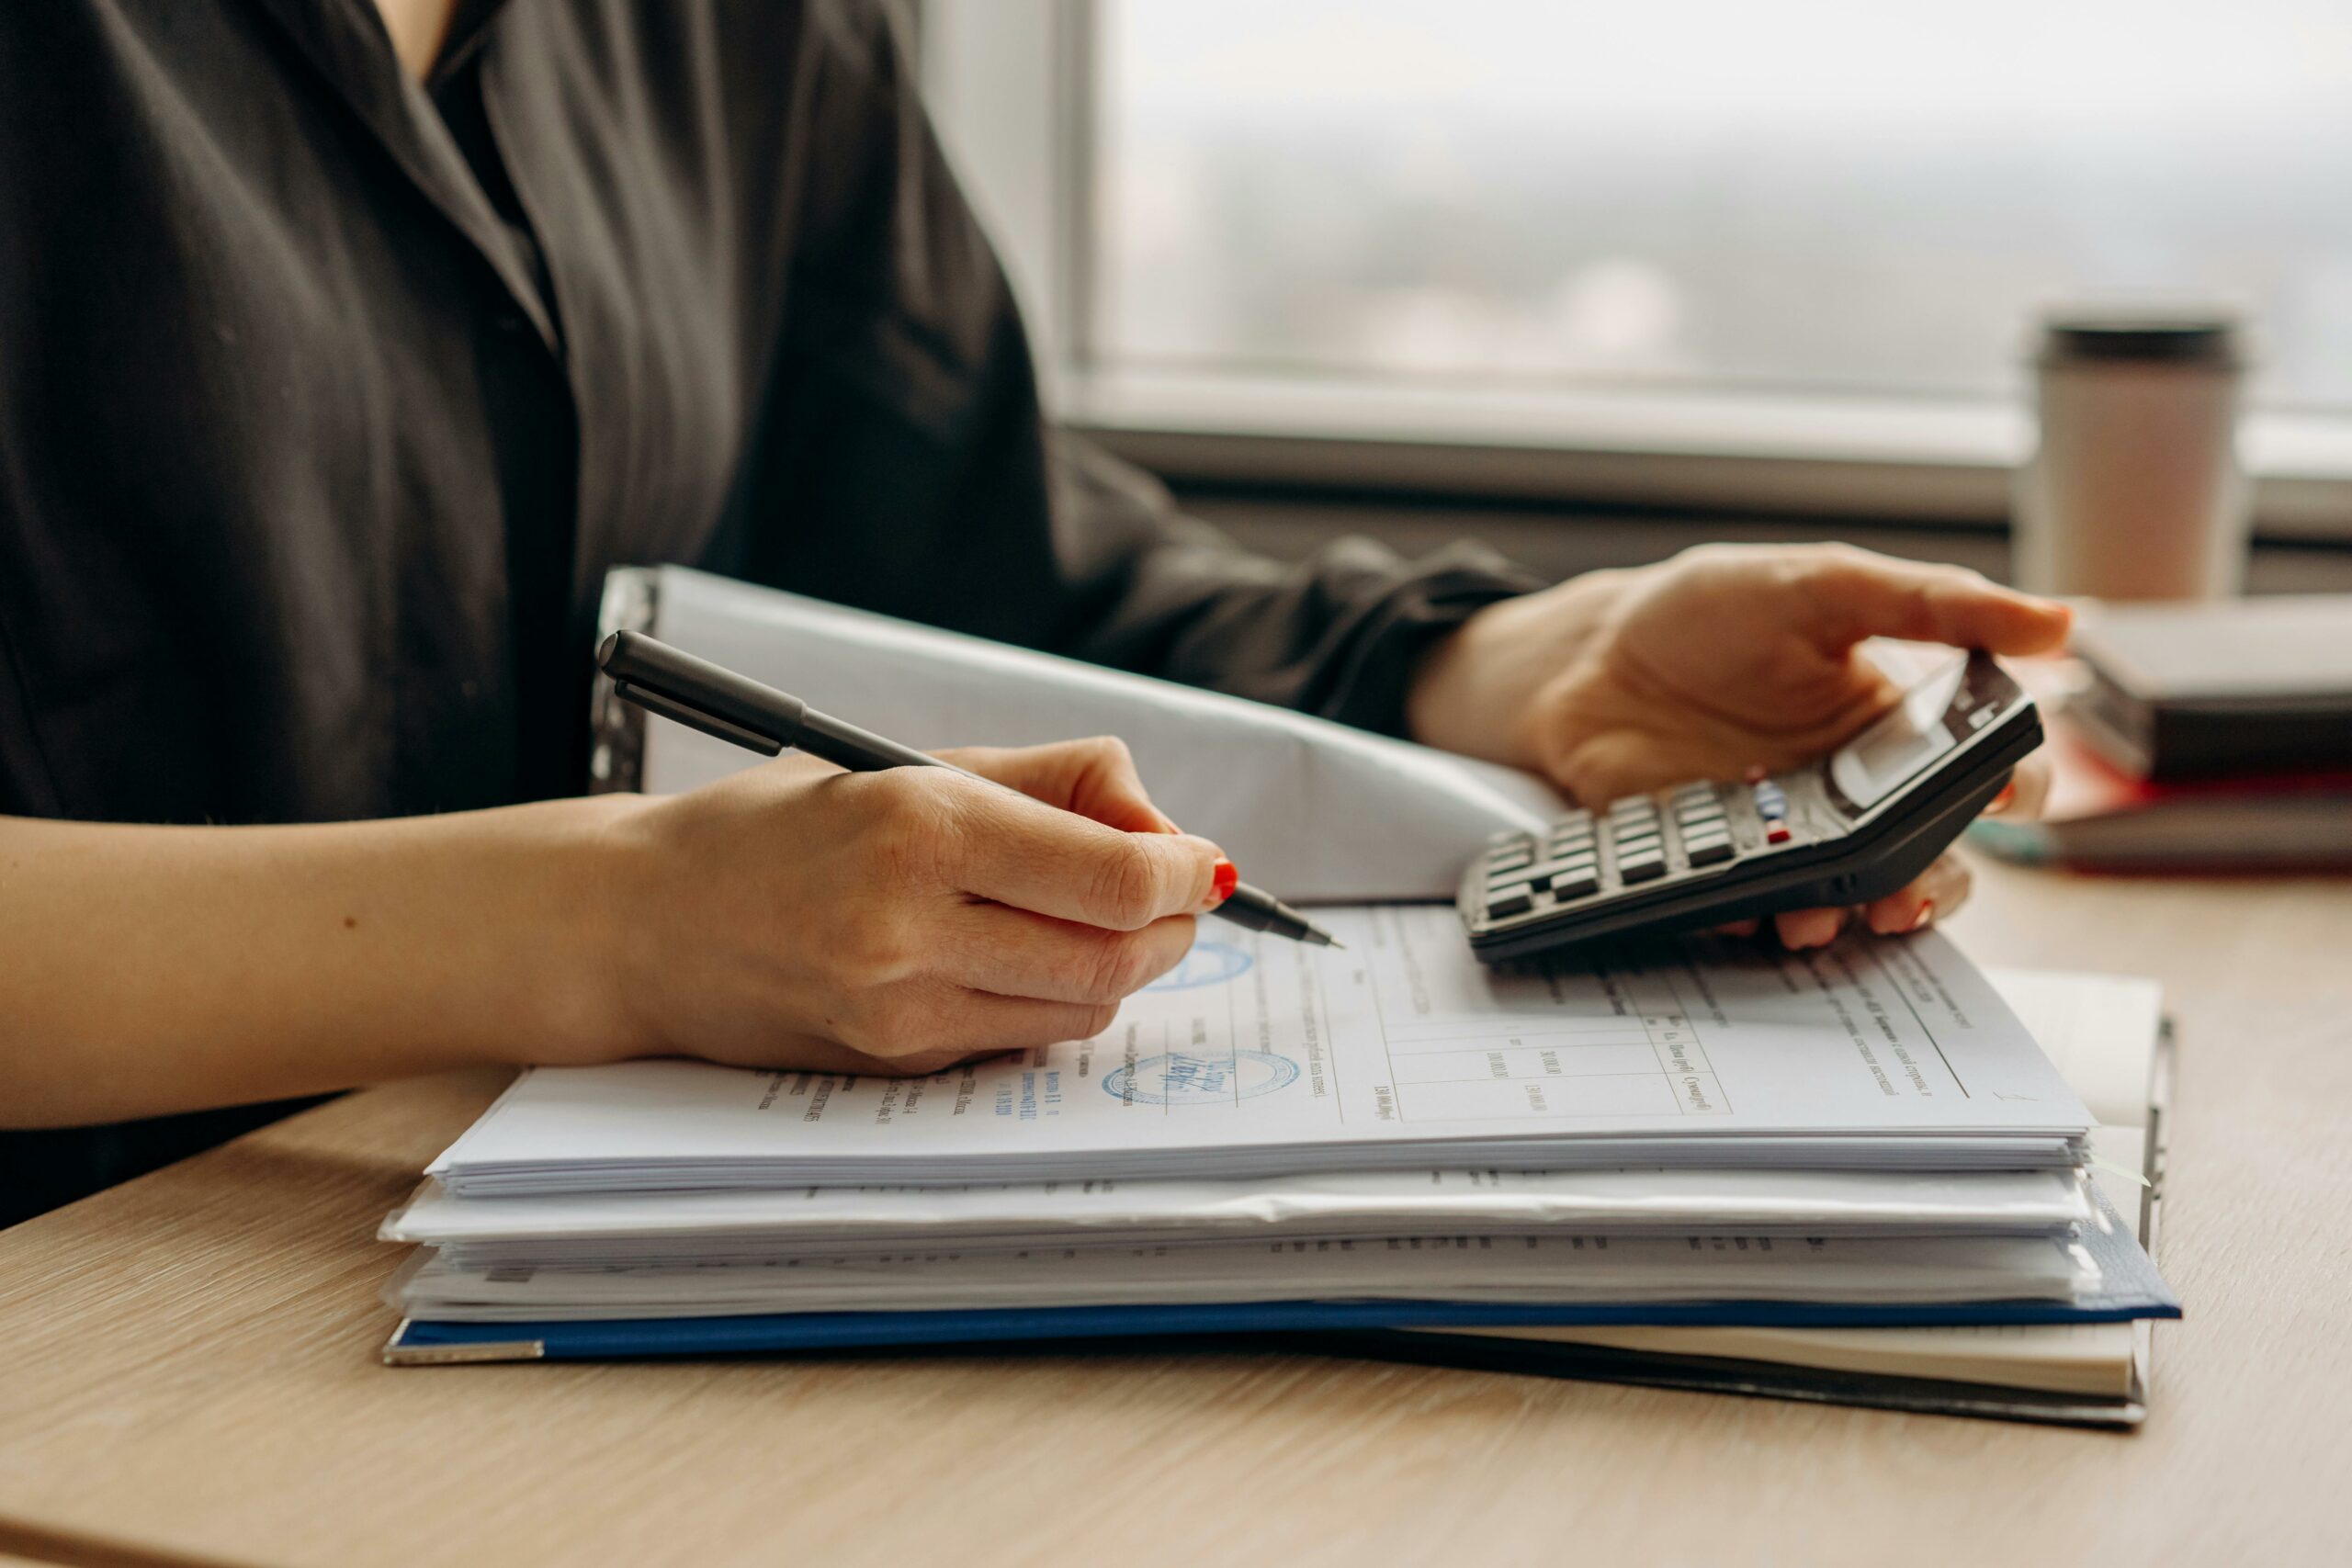 Une femme utilise une calculatrice et écrit des notes sur des documents, dans un bureau lumineux, indiquant un travail de comptabilité ou de budget.